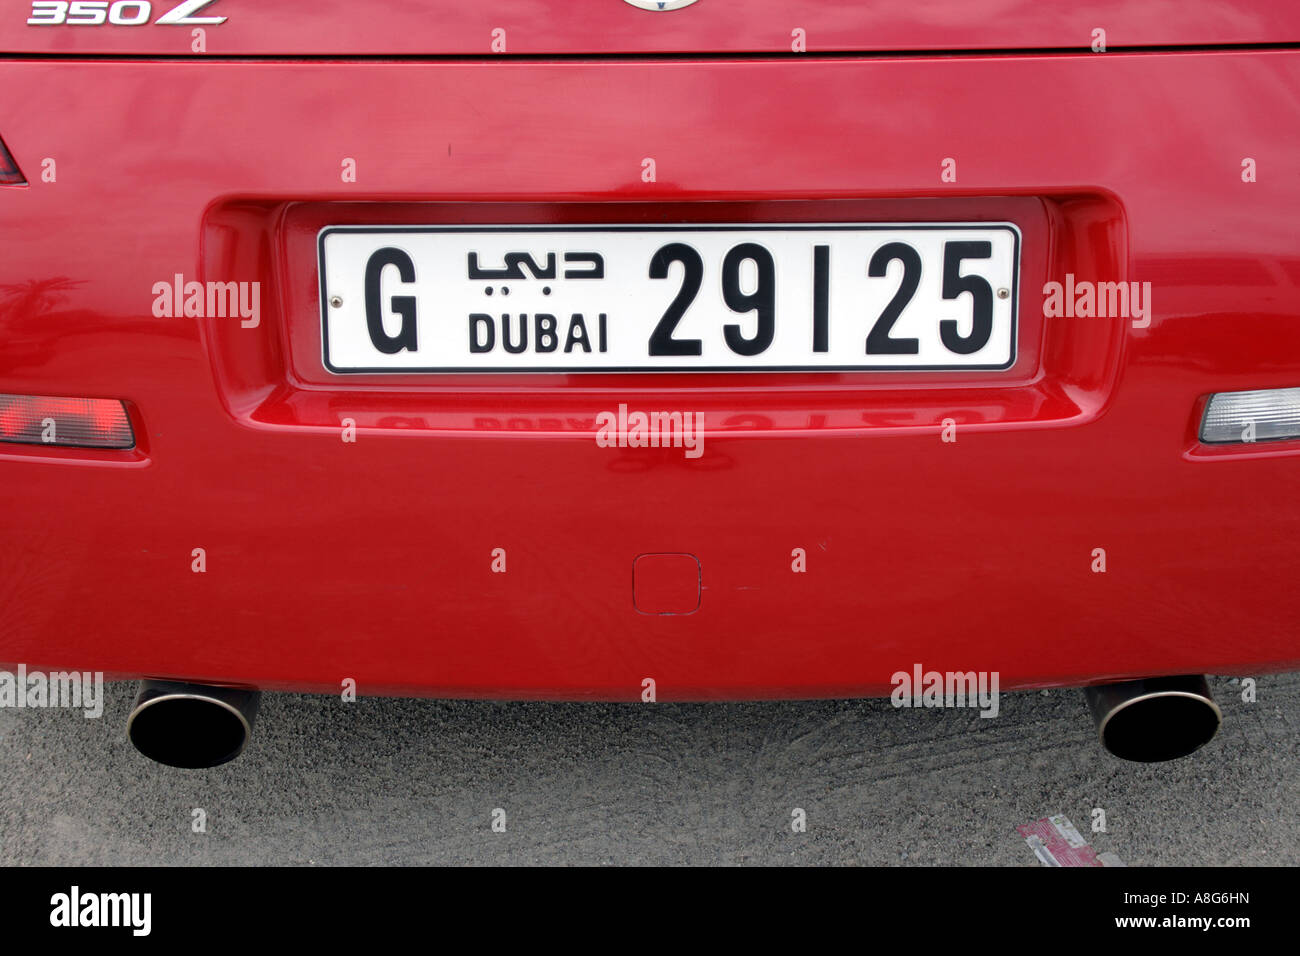 Kfz-Kennzeichen, Dubai, Vereinigte Arabische Emirate. Foto: Willy Matheisl Stockfoto